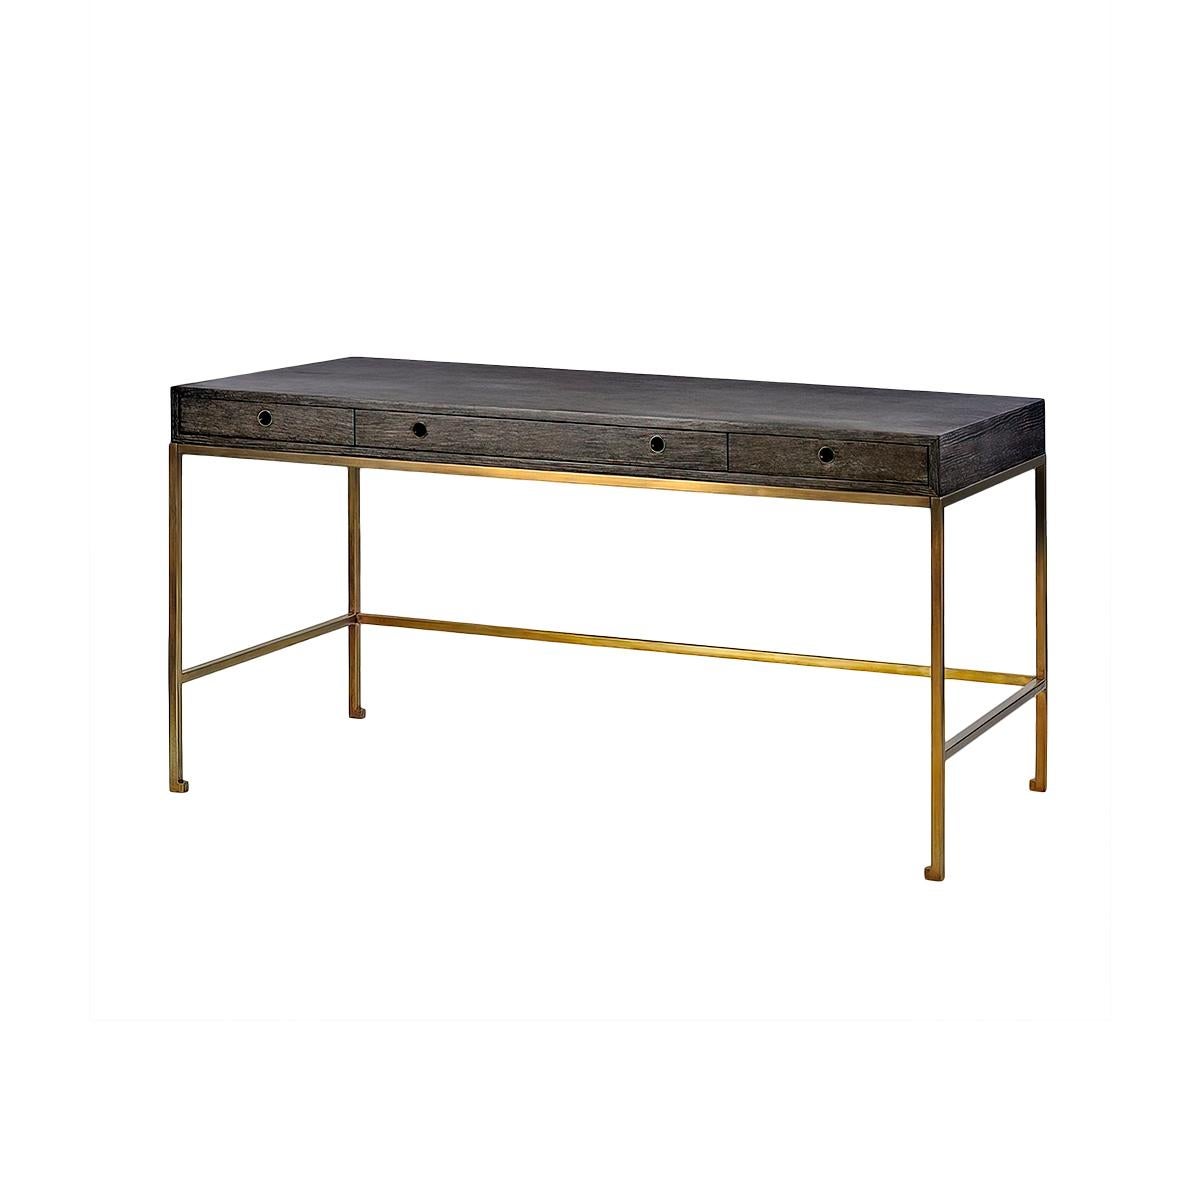 Midnight Modern Desk mit einzigartiger, dunkler, keramisch vergrauter Oberfläche, großer, flacher Schreibfläche und drei Schubladen mit metallischen Griffen mit Tülle. Auf einem bronzierten Metallsockel stehend.

Abmessungen: 60